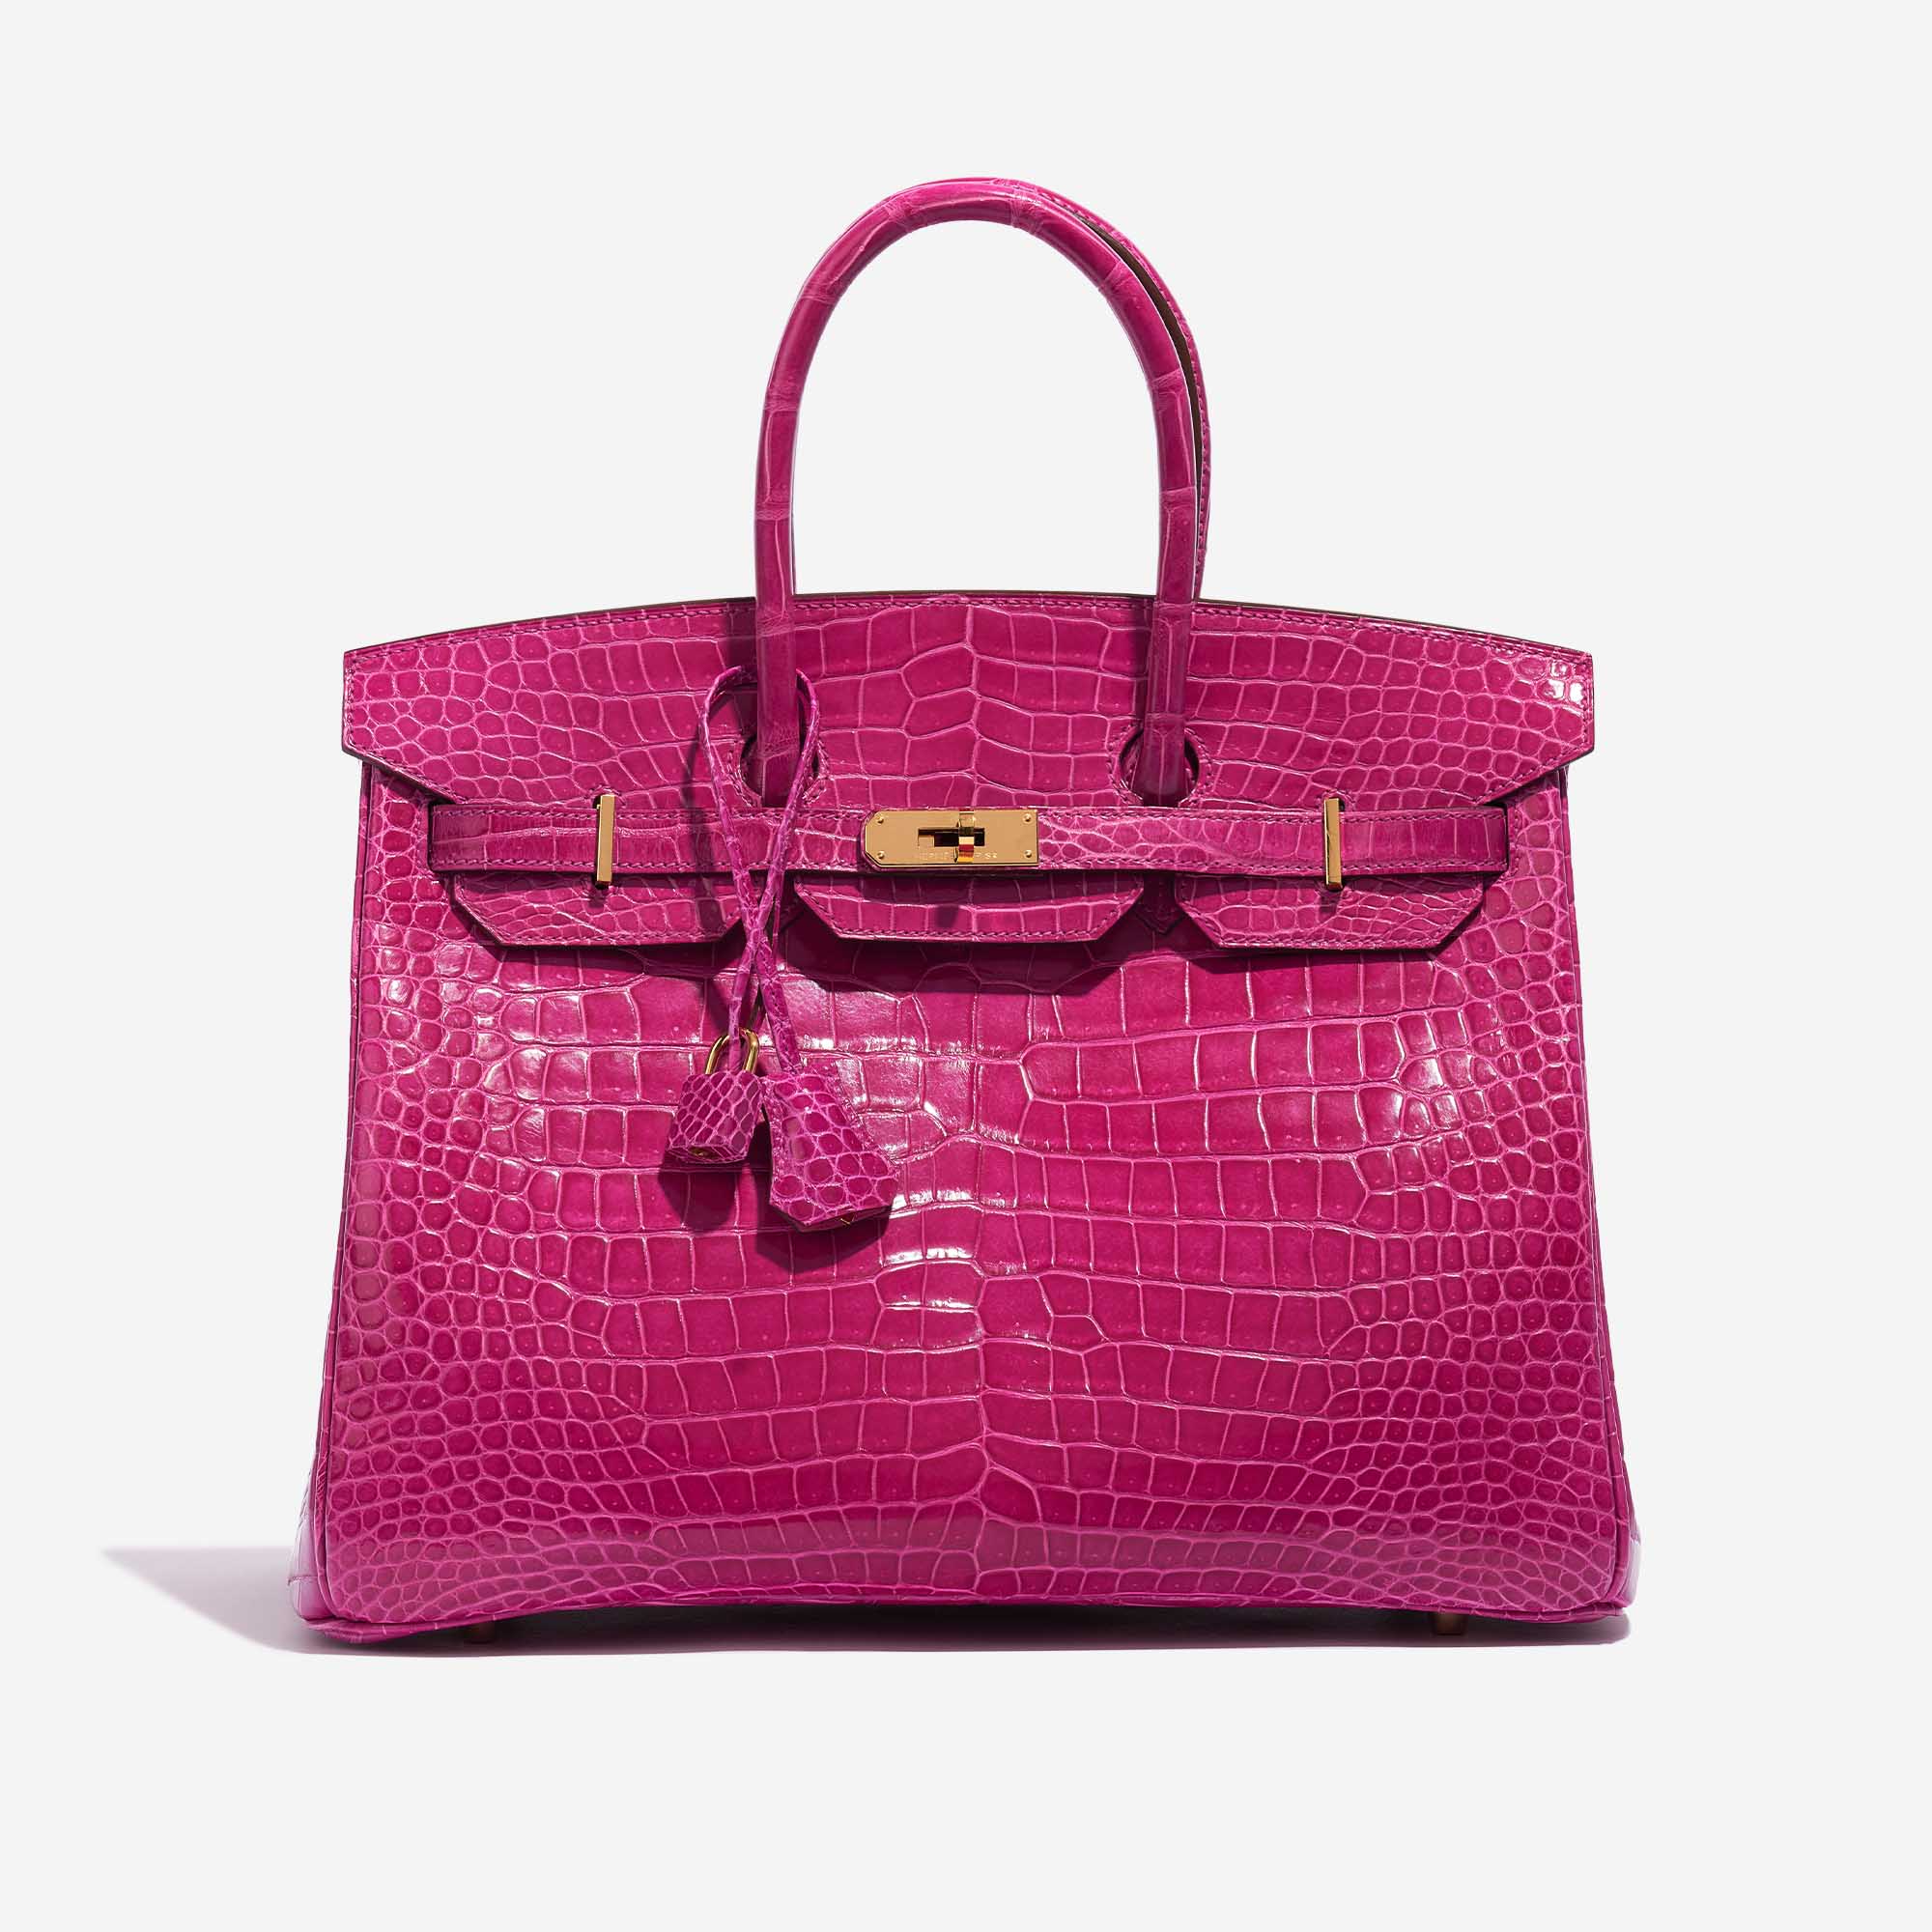 Pre-owned Hermès Tasche Birkin 35 Porosus Crocodile Rose Scheherazade Pink Front | Verkaufen Sie Ihre Designer-Tasche auf Saclab.com